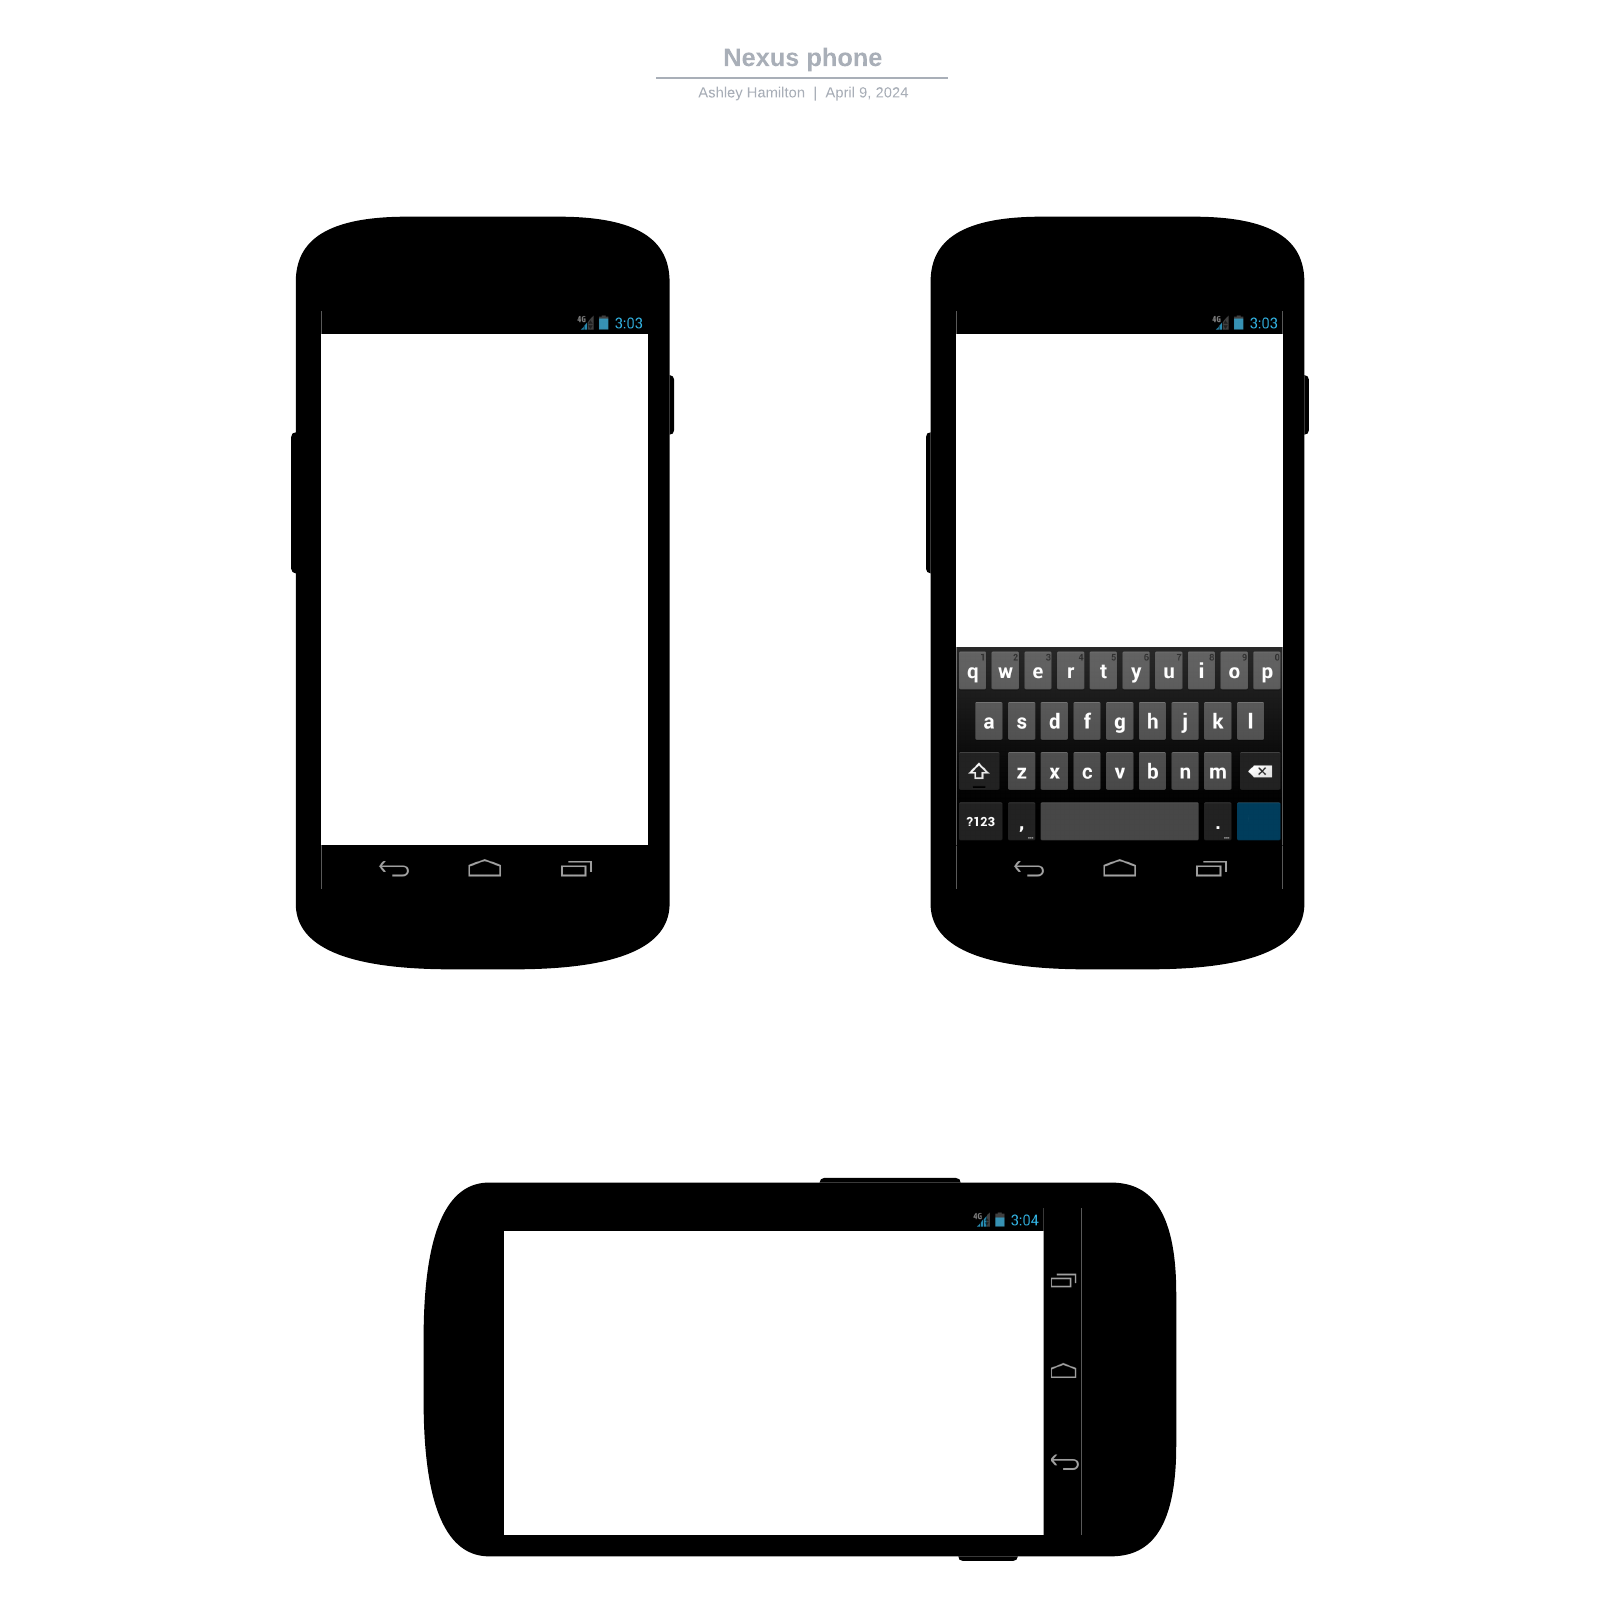 Nexus phone example